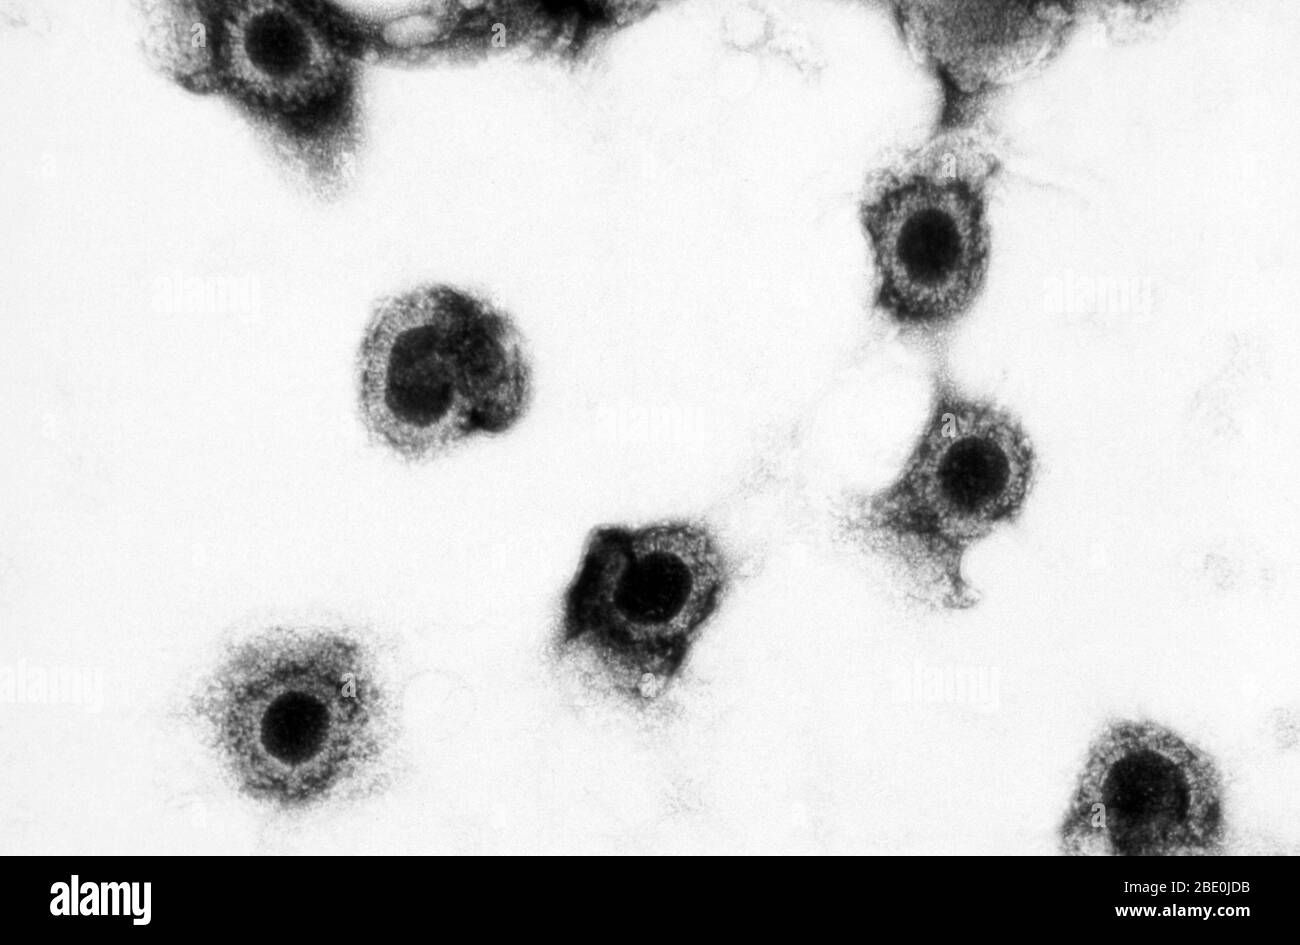 La micrografia elettronica a trasmissione (TEM) mostra un certo numero di virioni citomegalovirus presenti in un campione di tessuto sconosciuto. Il citomegalovirus (CMV) è un genere di virus dell'ordine Herpesvirales, appartenente alla famiglia Herpesviridae, appartenente alla sottofamiglia Betaherpesvirinae. Gli esseri umani e le scimmie servono come ospiti naturali. Il citomegalovirus è un virus del DNA a doppio filamento (dsDNA). Attualmente, in questo genere sono presenti otto specie, tra cui la specie tipo, il citomegalovirus umano (HCMV, herpesvirus umano 5, HHV-5), che è la specie che infetta gli esseri umani. Nella letteratura medica, la maggior parte delle menzioni di CMV senza ulteriori specifiche Foto Stock